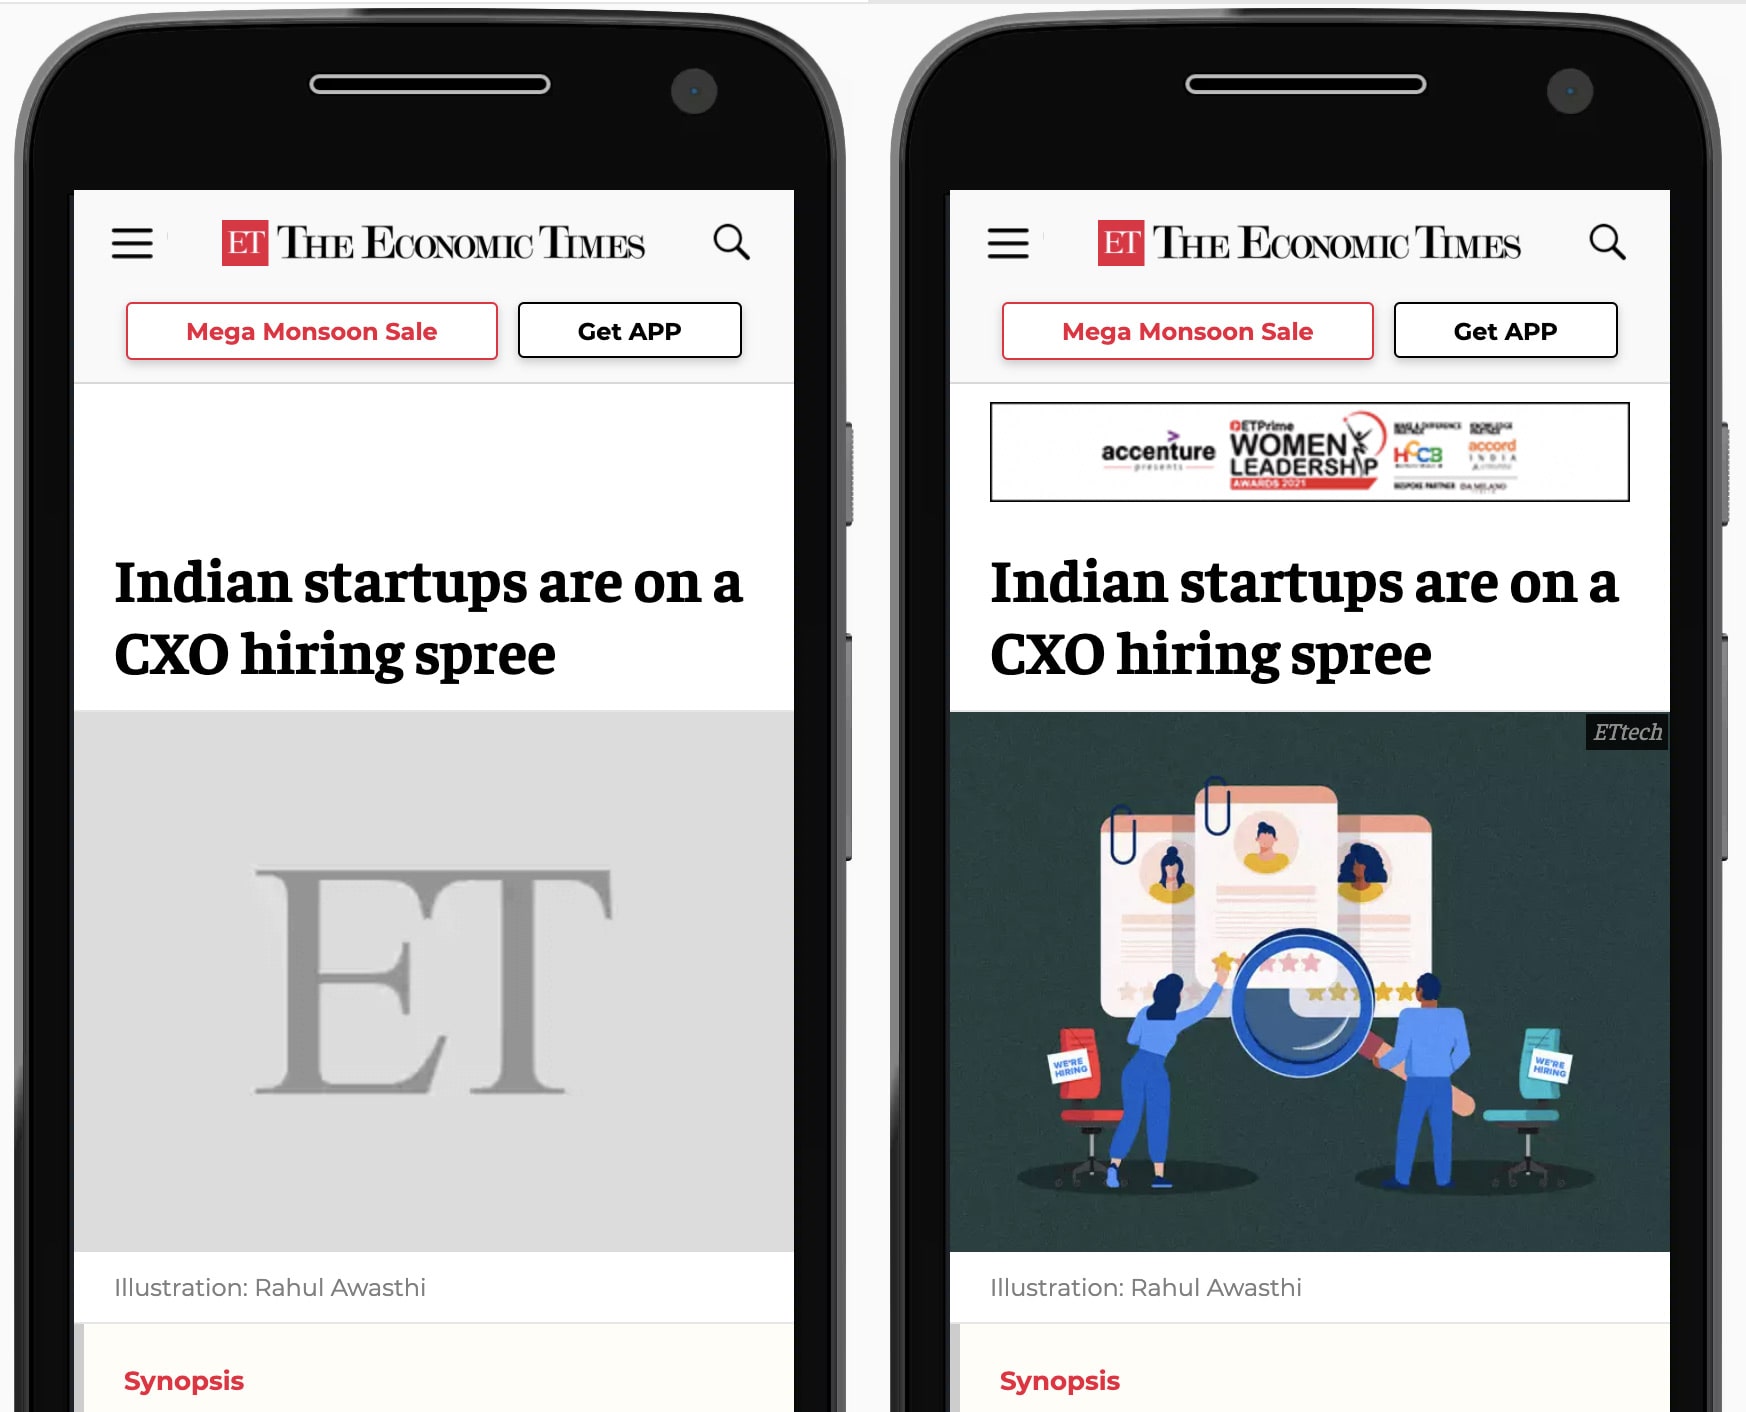 Ảnh so sánh song song trang web của The Economic Times được minh hoạ trên điện thoại di động. Ở bên trái, phần giữ chỗ màu xám được dành riêng cho hình ảnh chính của bài viết. Ở bên phải, trình giữ chỗ được thay thế bằng hình ảnh đã tải.